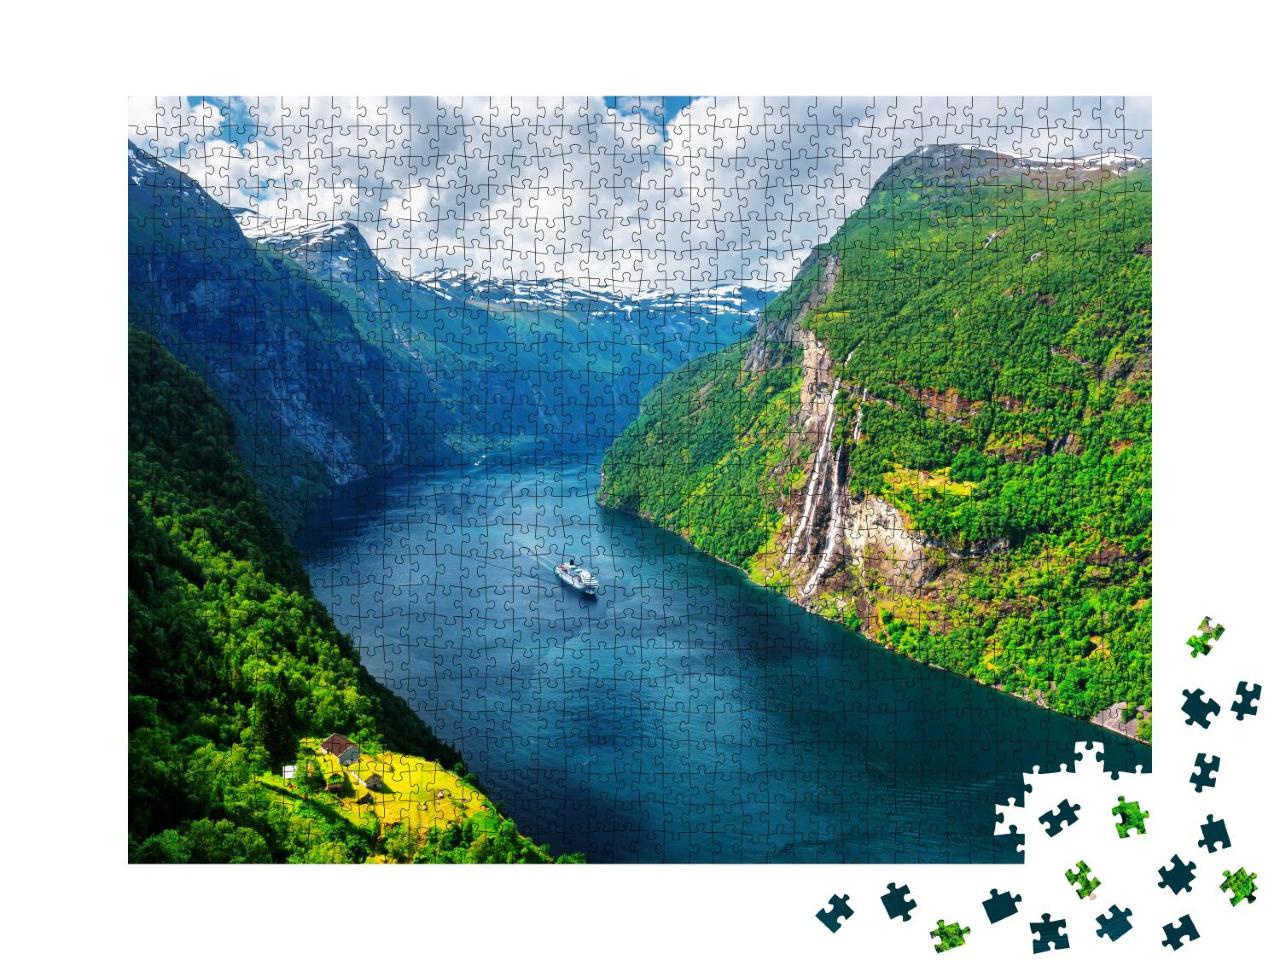 Puzzle 1000 Teile „Sunnylvsfjord und die berühmten Wasserfälle der Sieben Schwestern, Norwegen“